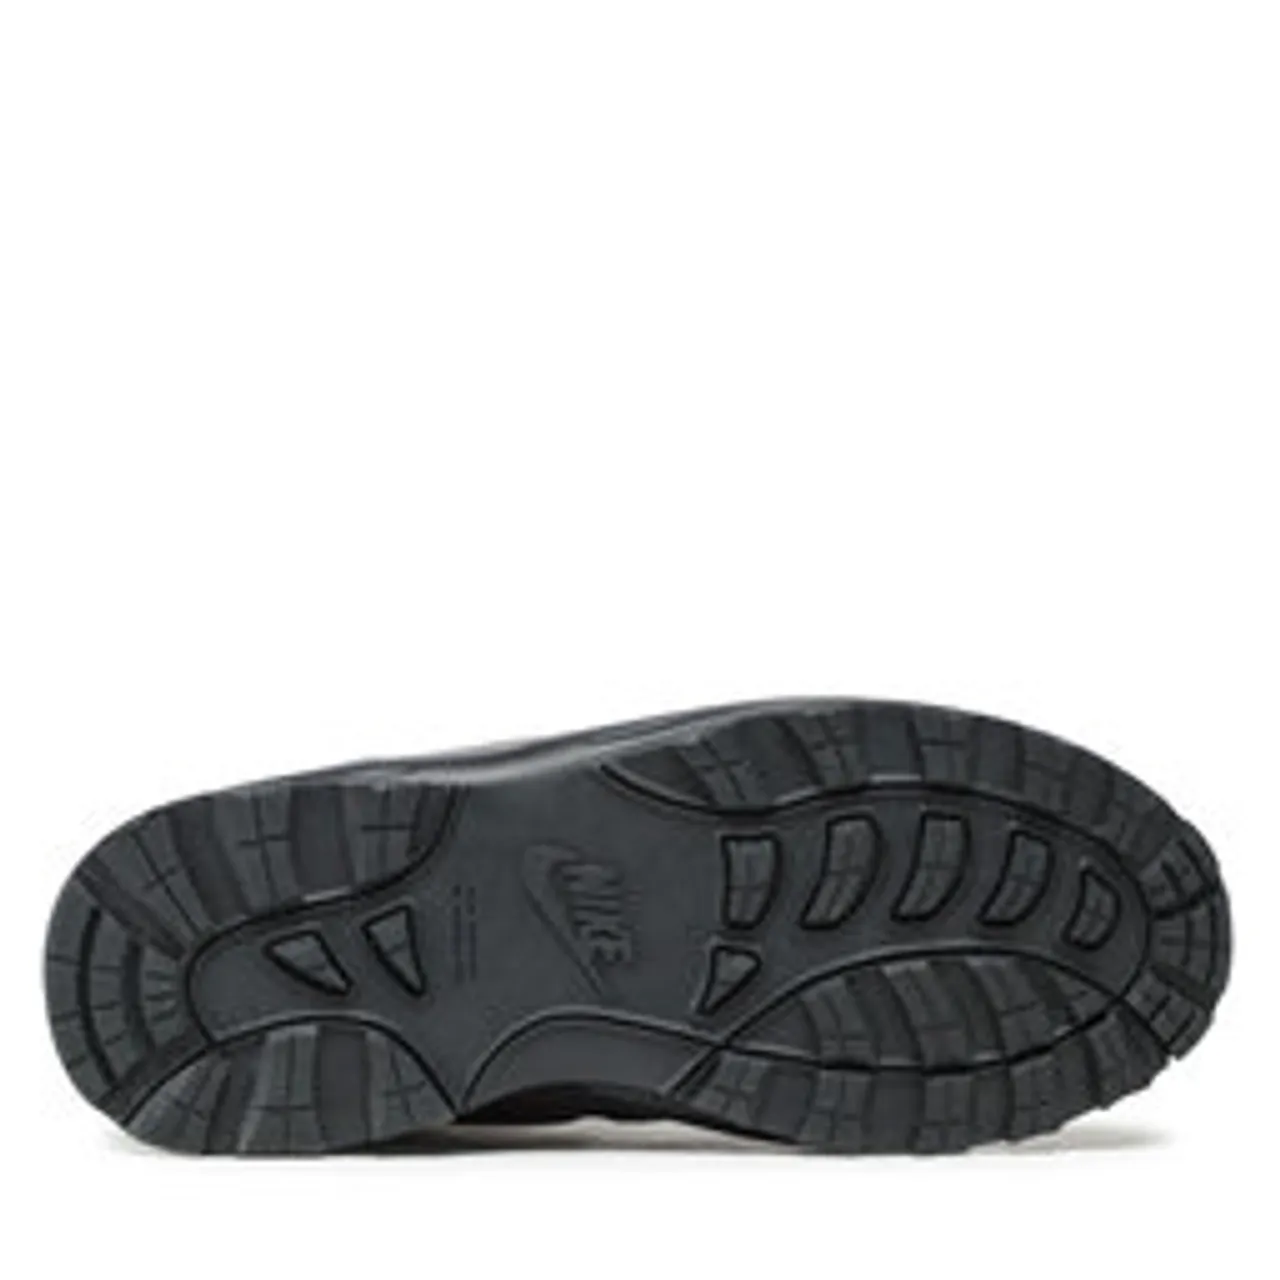 Sneakers Nike Manoa Ltr (Gs) BQ5372 200 Violett